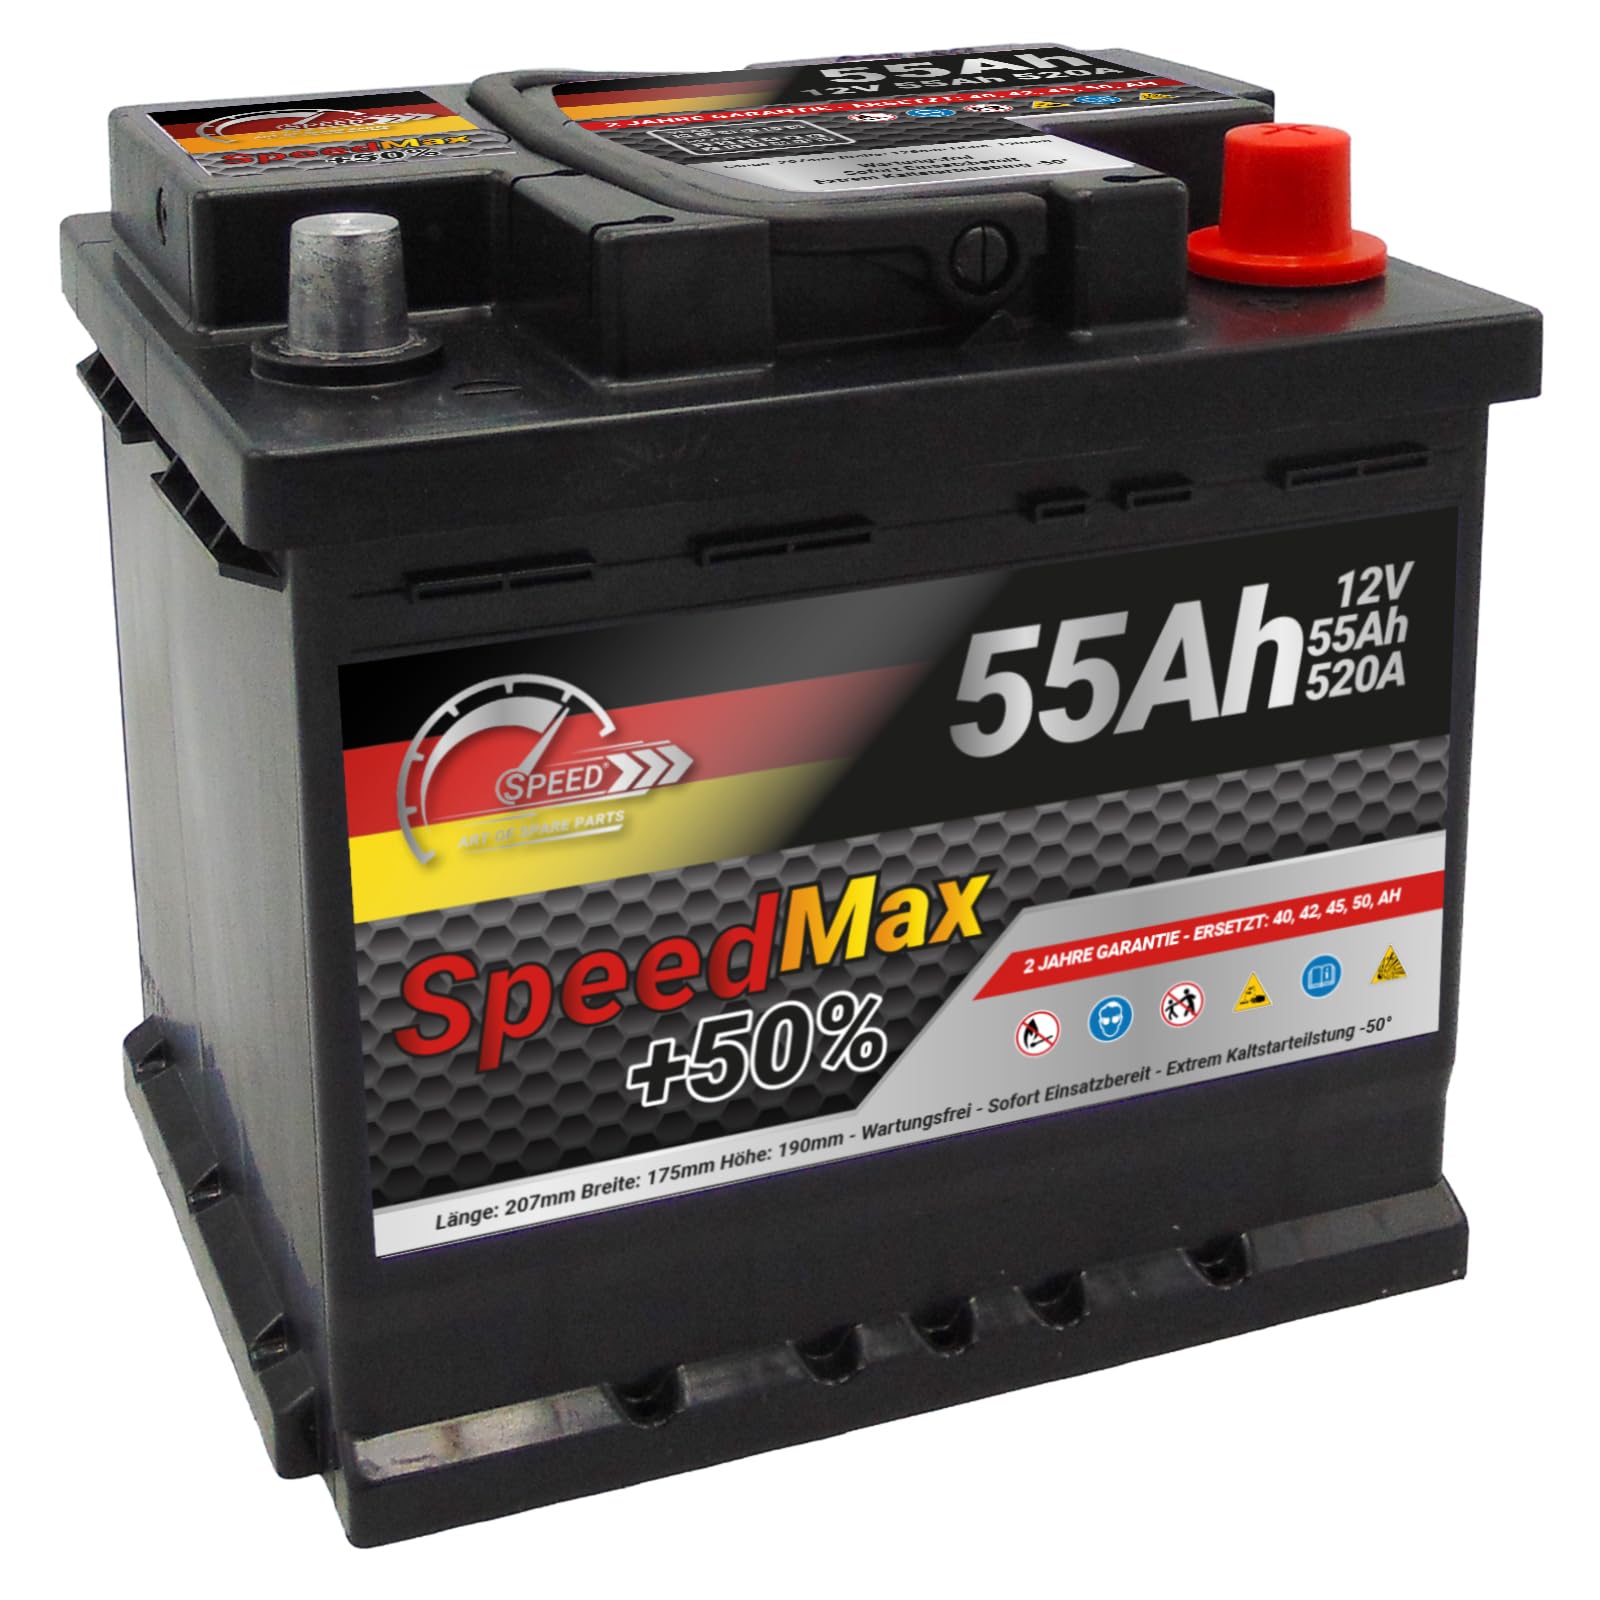 Autobatterie Speed Max (L155MAX) 55Ah 520A 12v von SMC